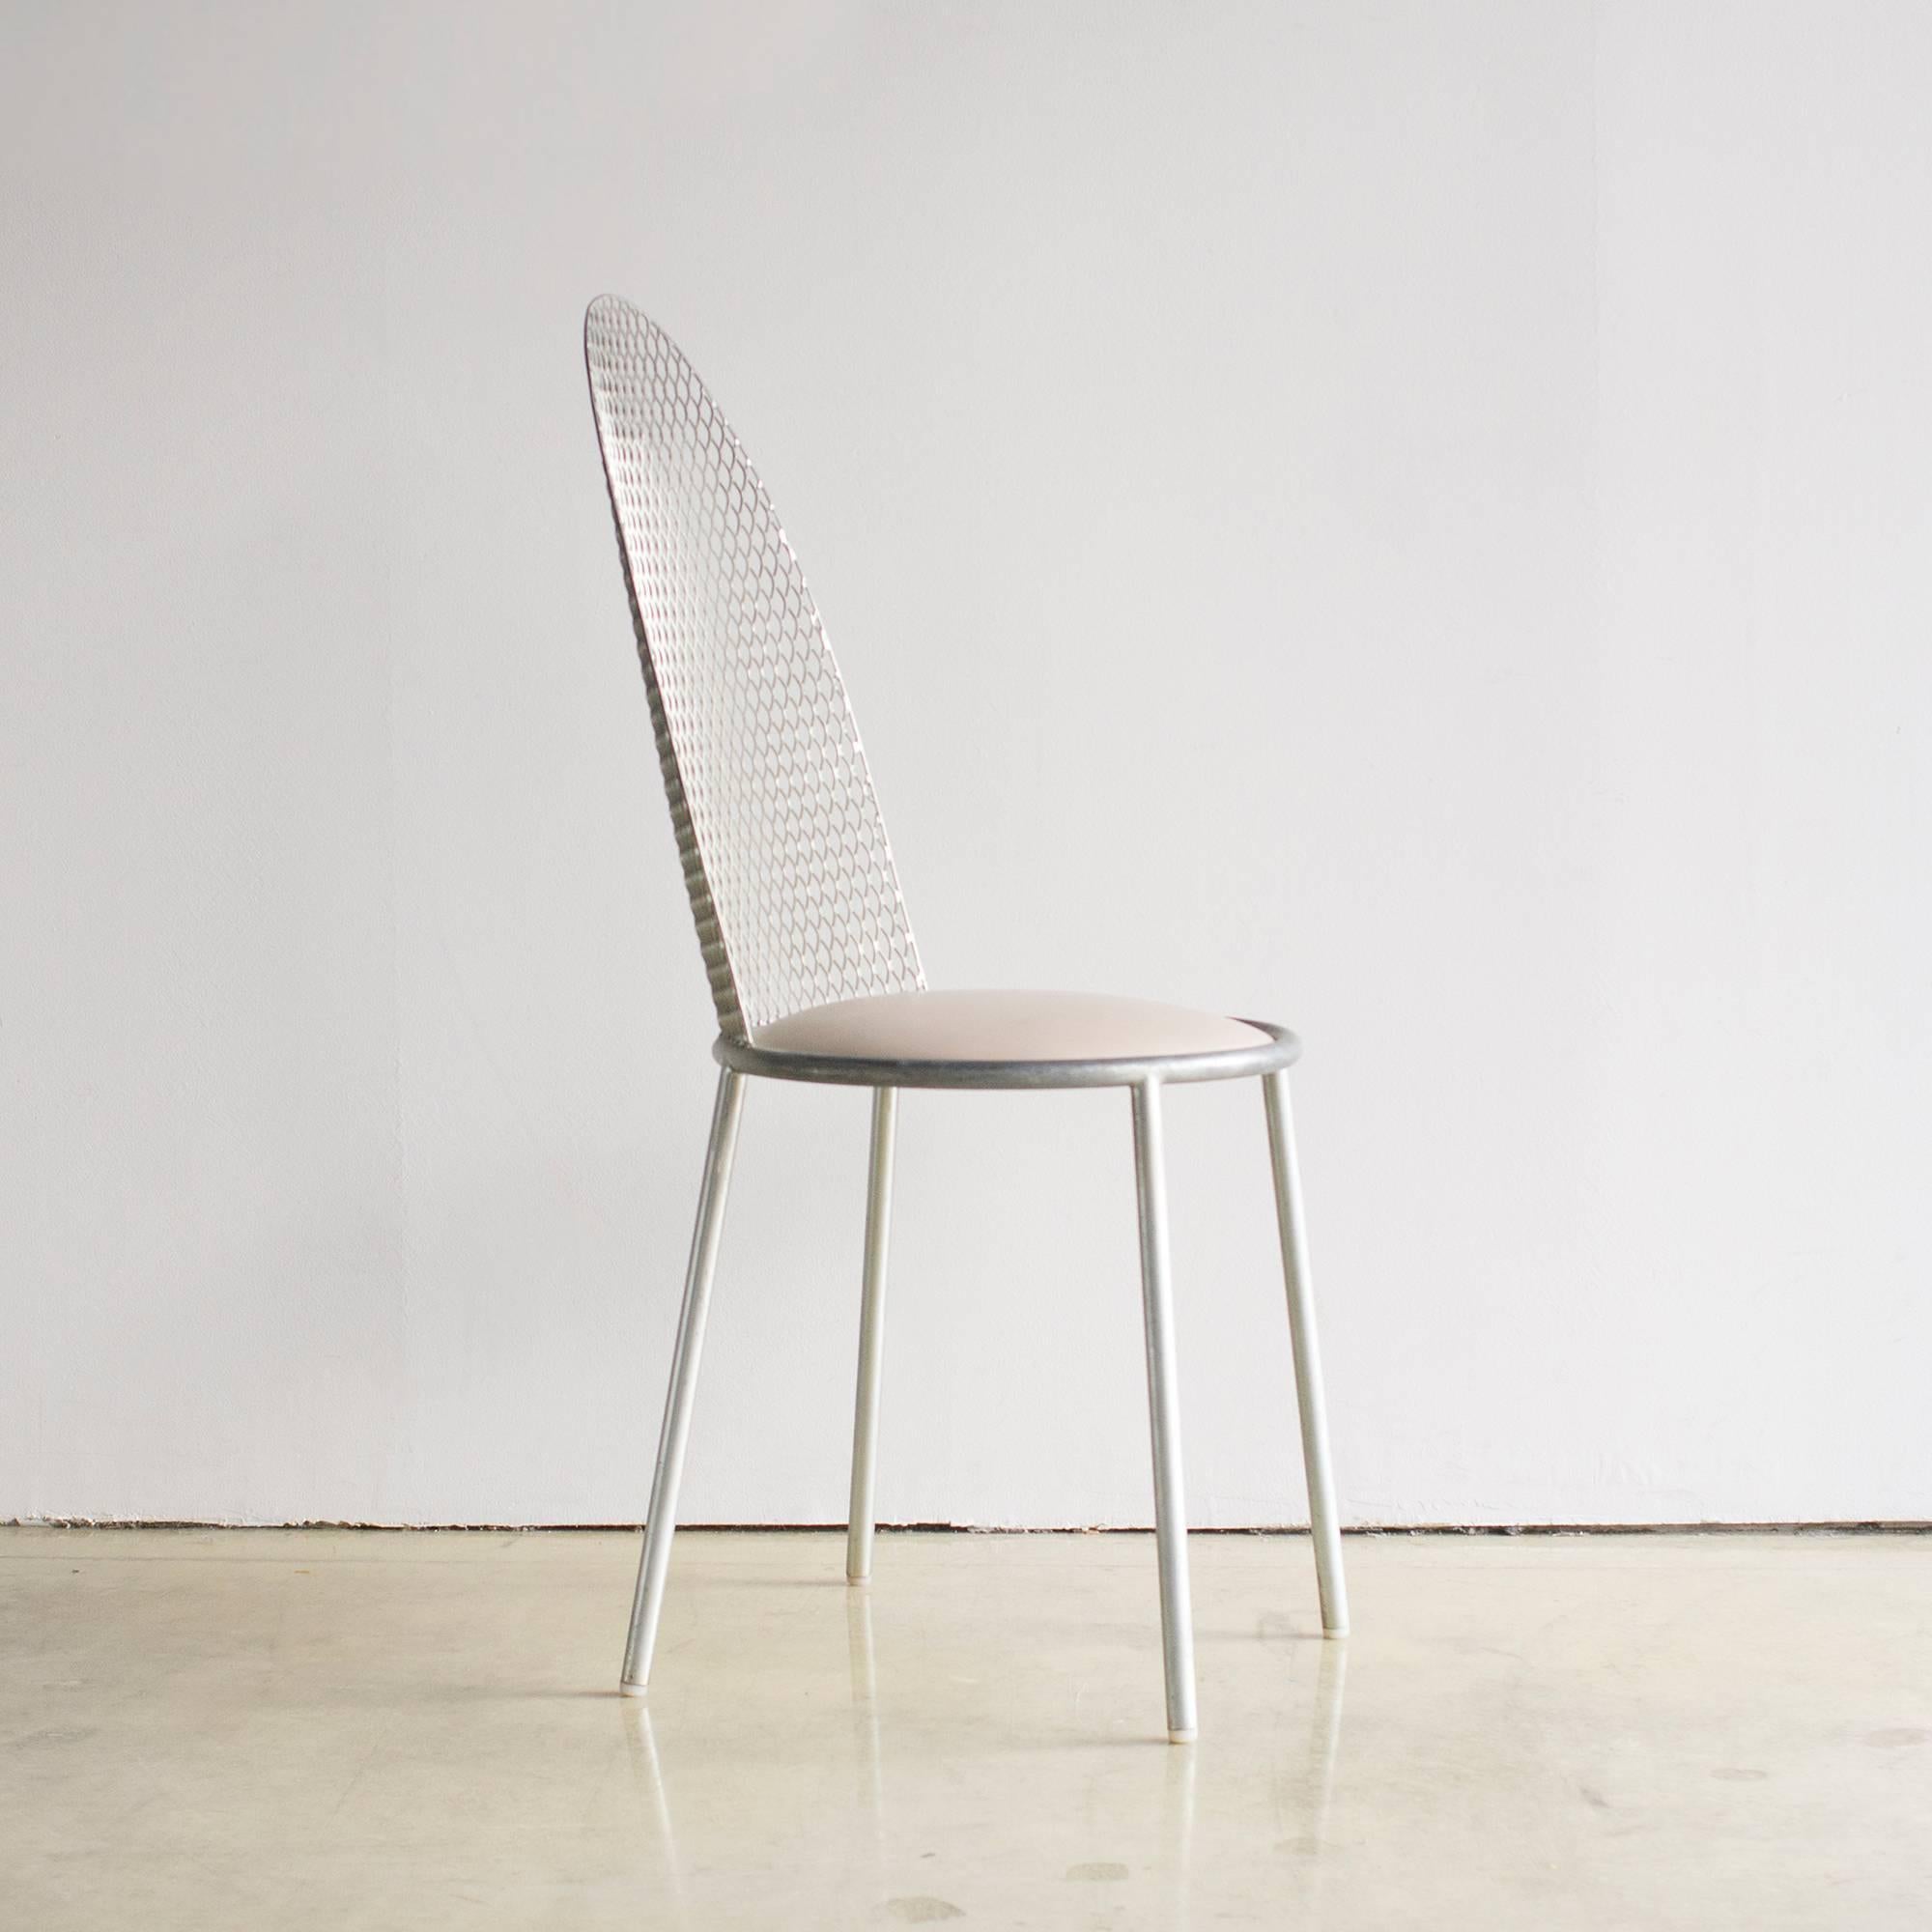 HAL2 Stuhl, entworfen von Shiro Kuramata für Cassina Inderdecor im Jahr 1987.
Sitz aus Vinyl und Rückenlehne aus Streckmetall.